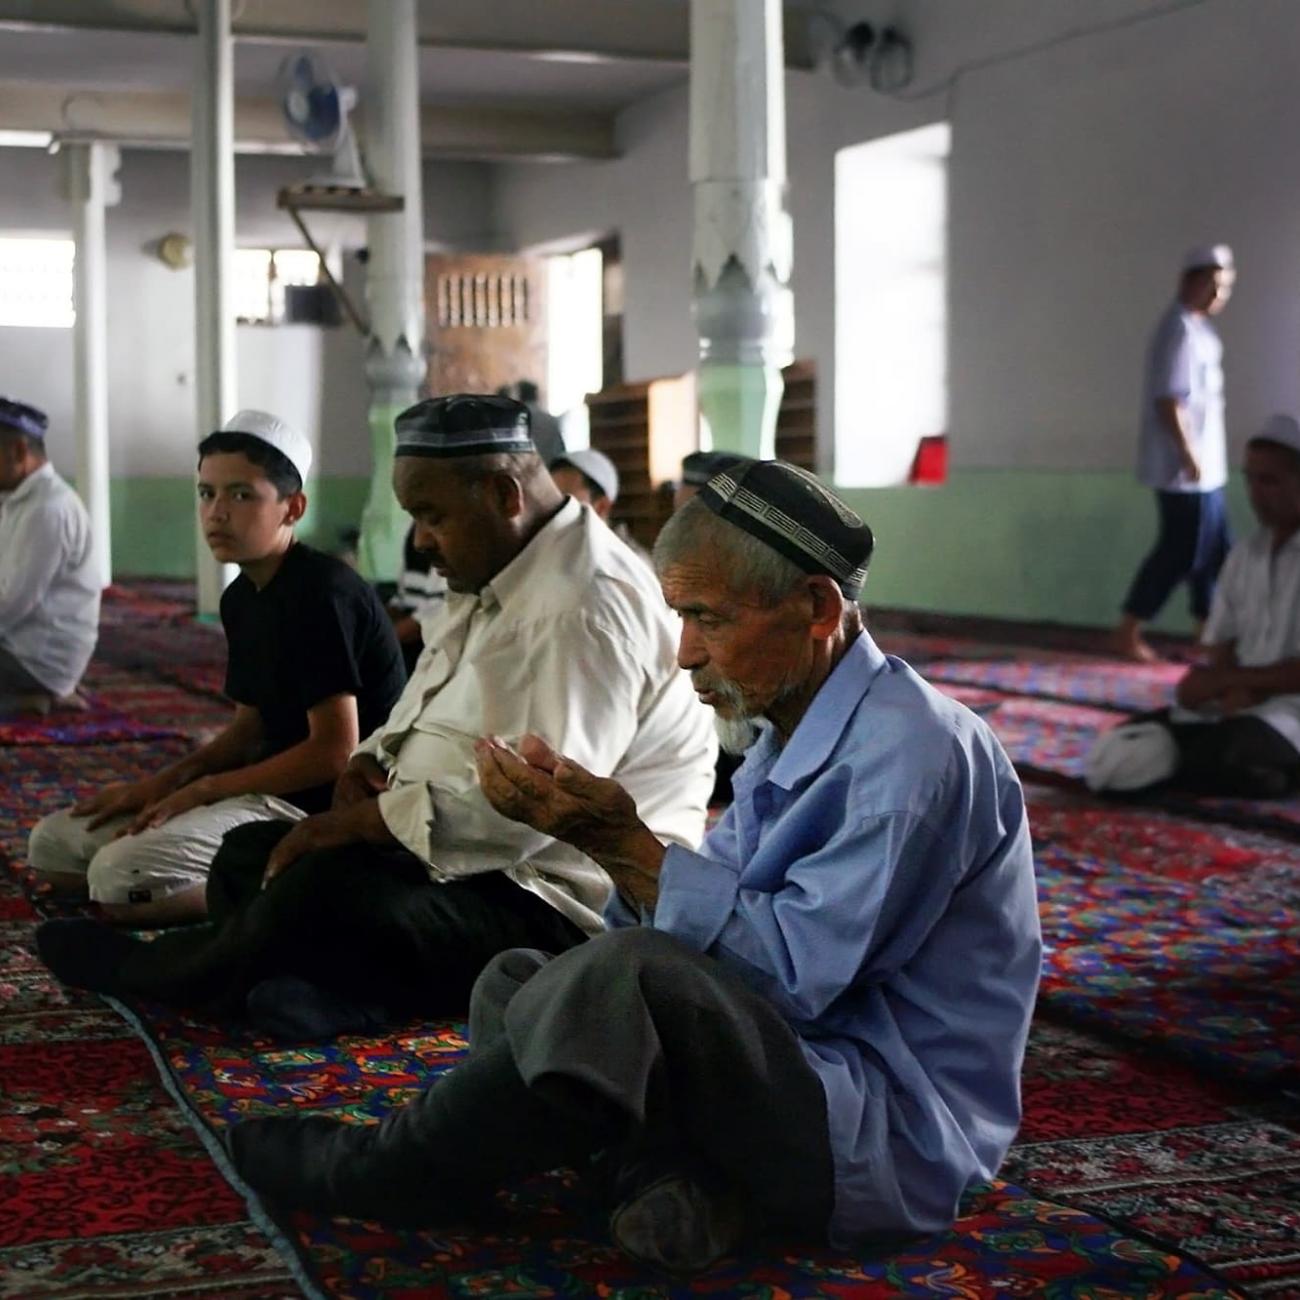 Узбекистан мусульмане. Мечеть узбека.